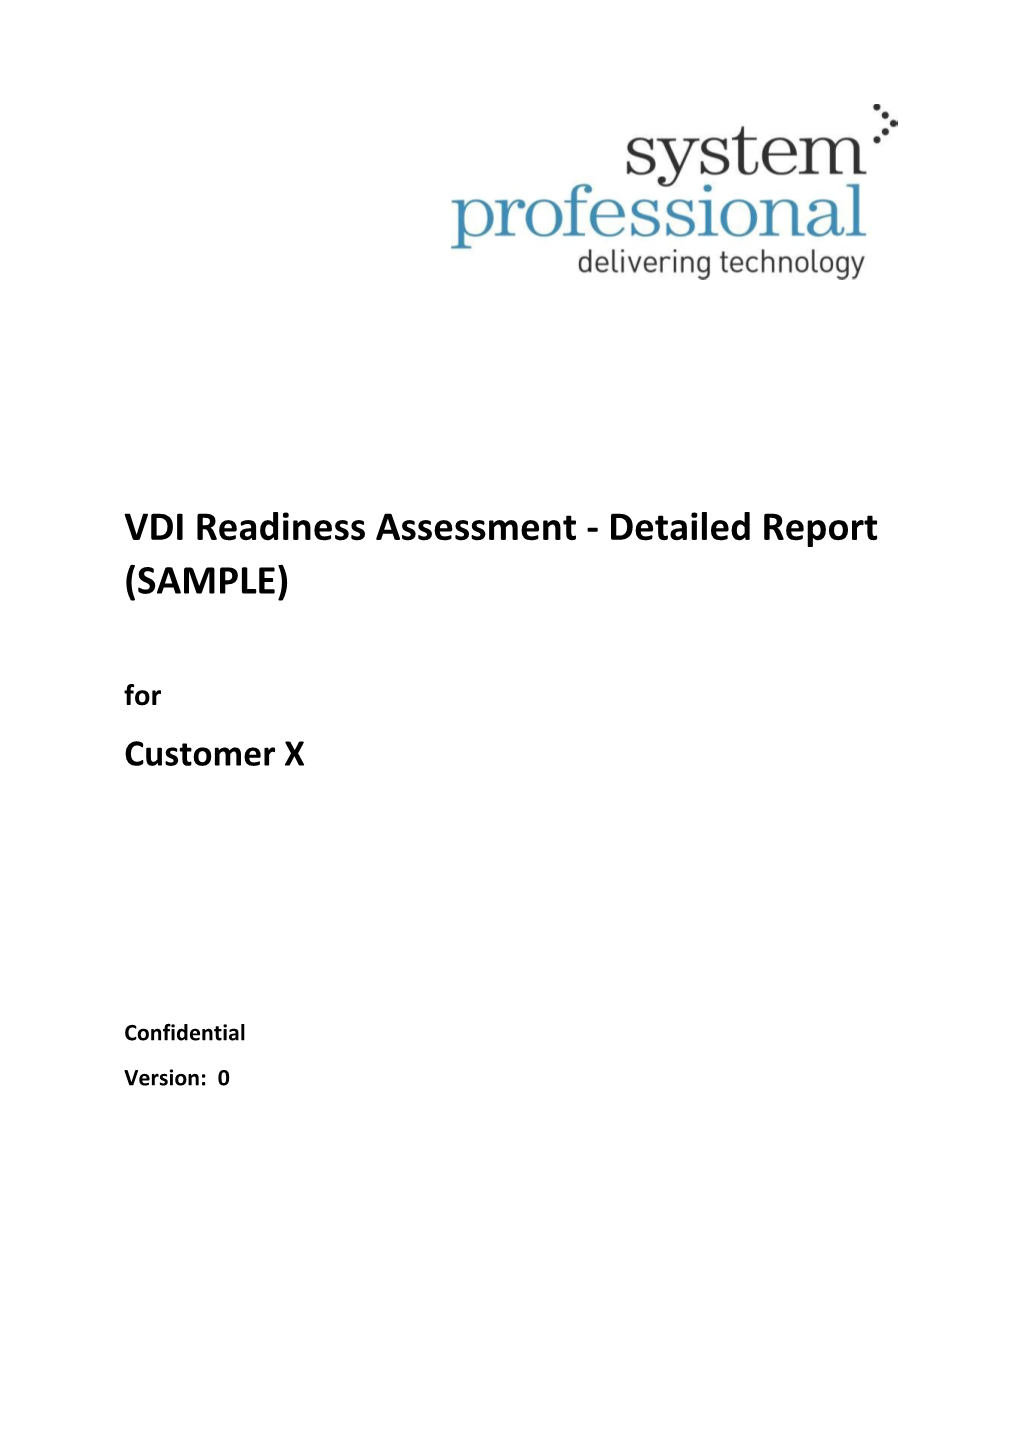 Liquidwarelabs VDI Assessment Analysis